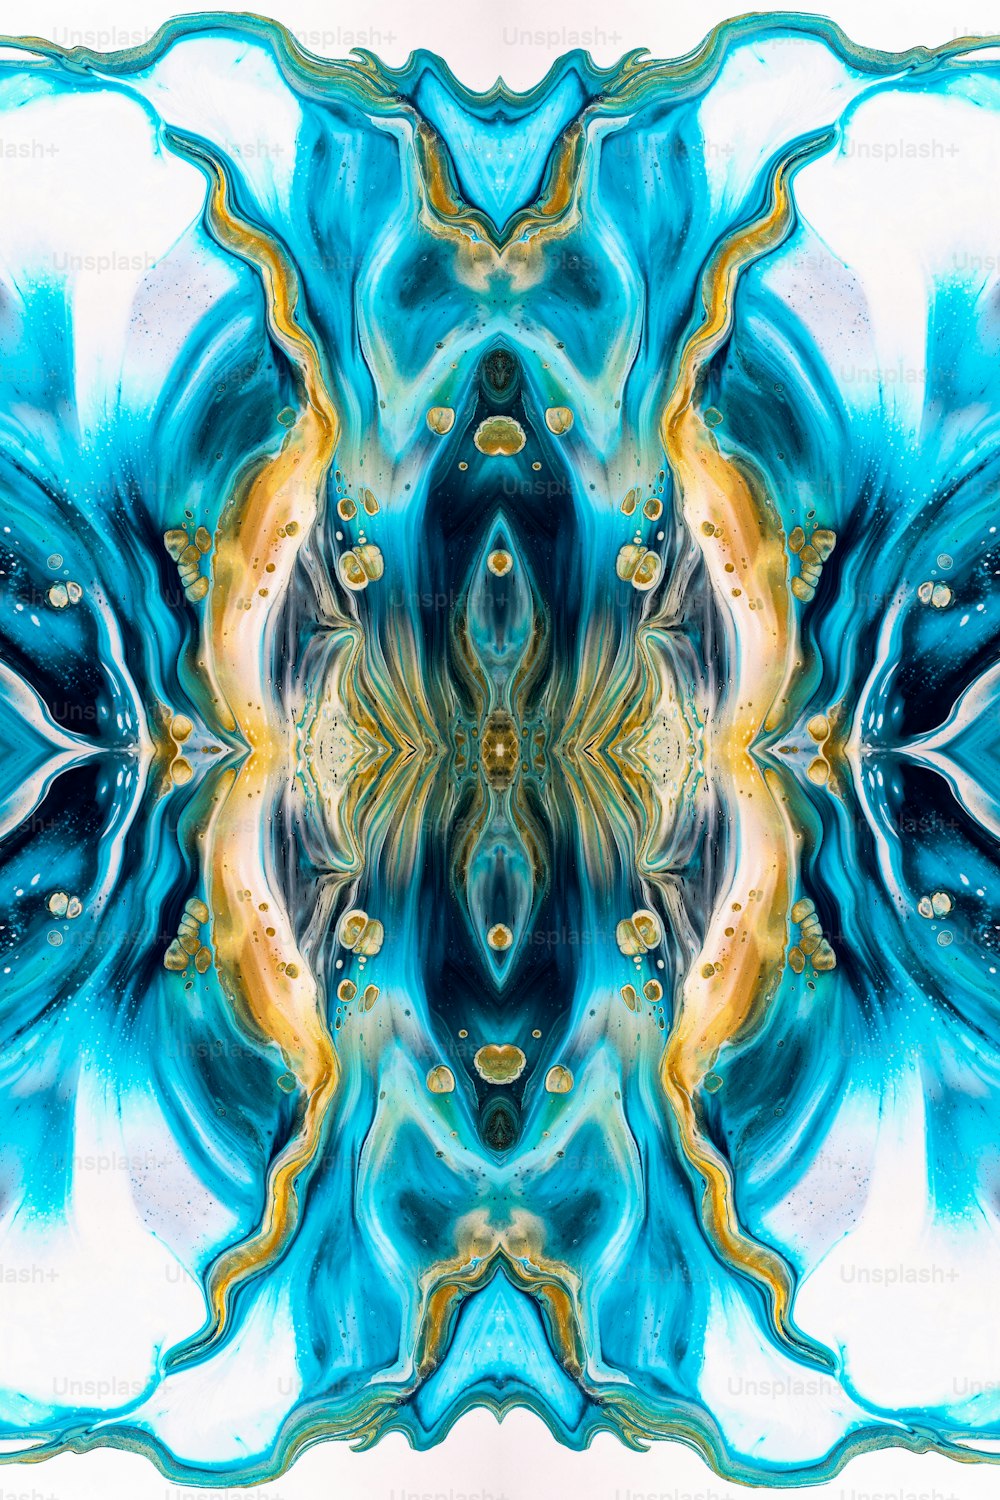 Un'immagine astratta di un fiore blu e giallo